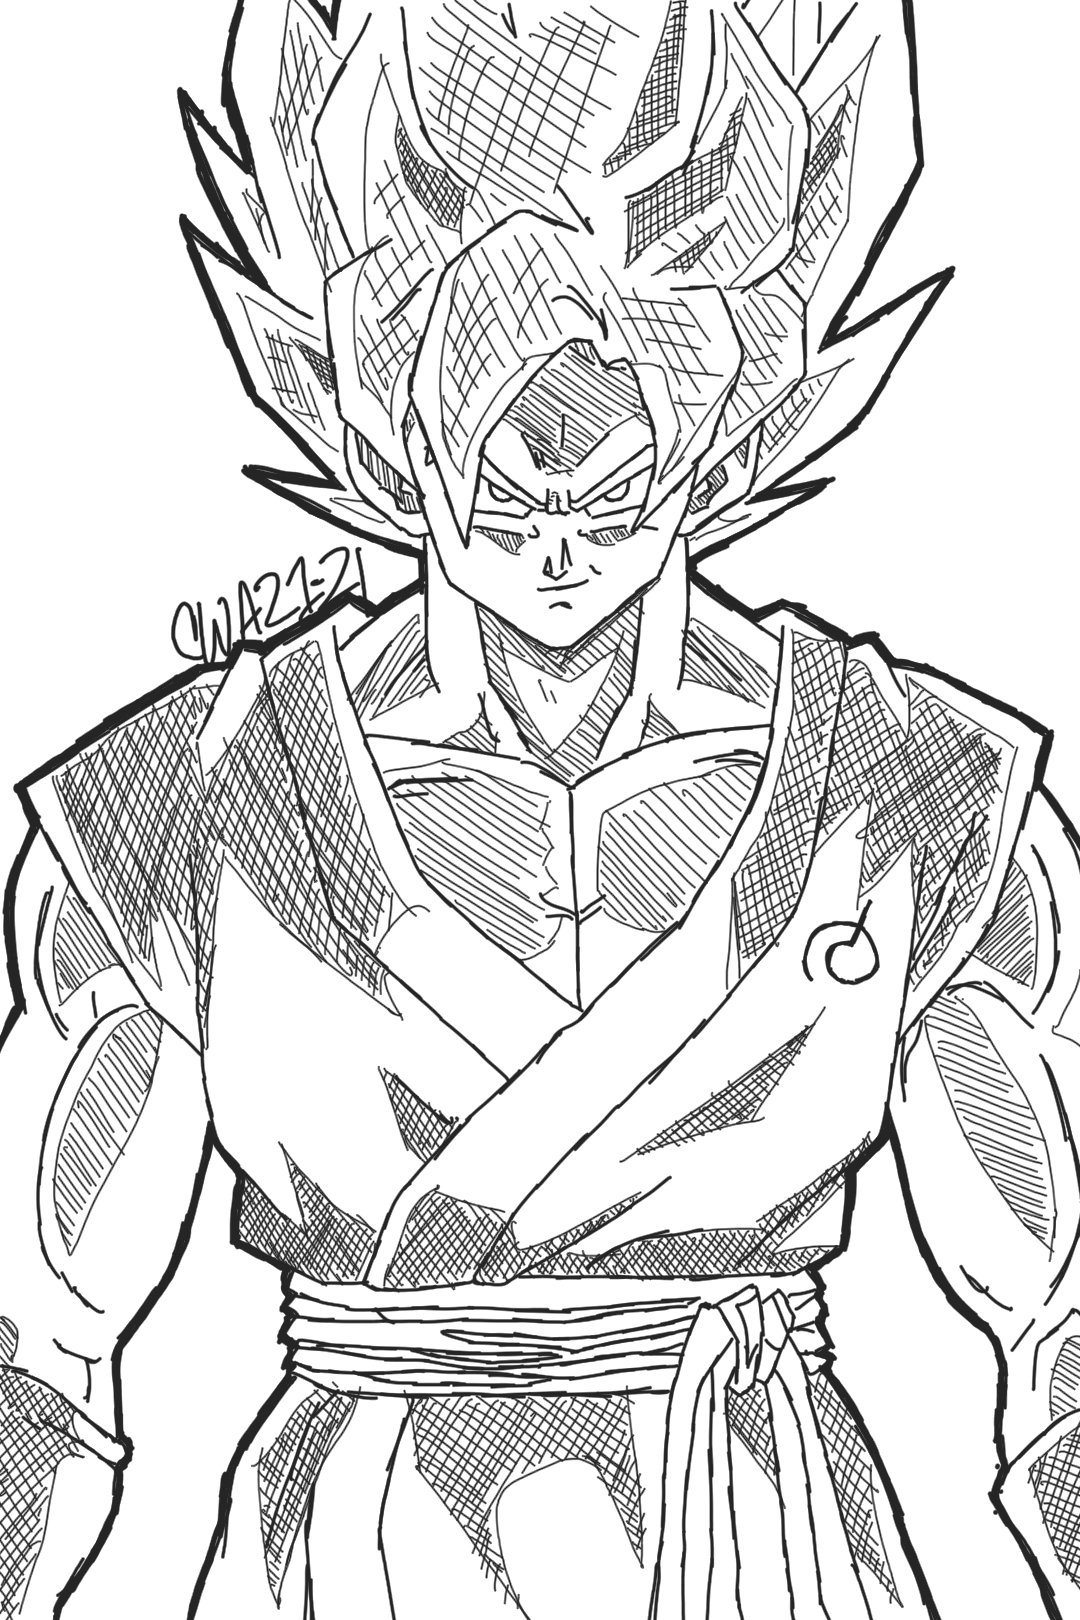 Kakarot – Son Goku – Dragon Ball Z Charcoal Drawing Manga